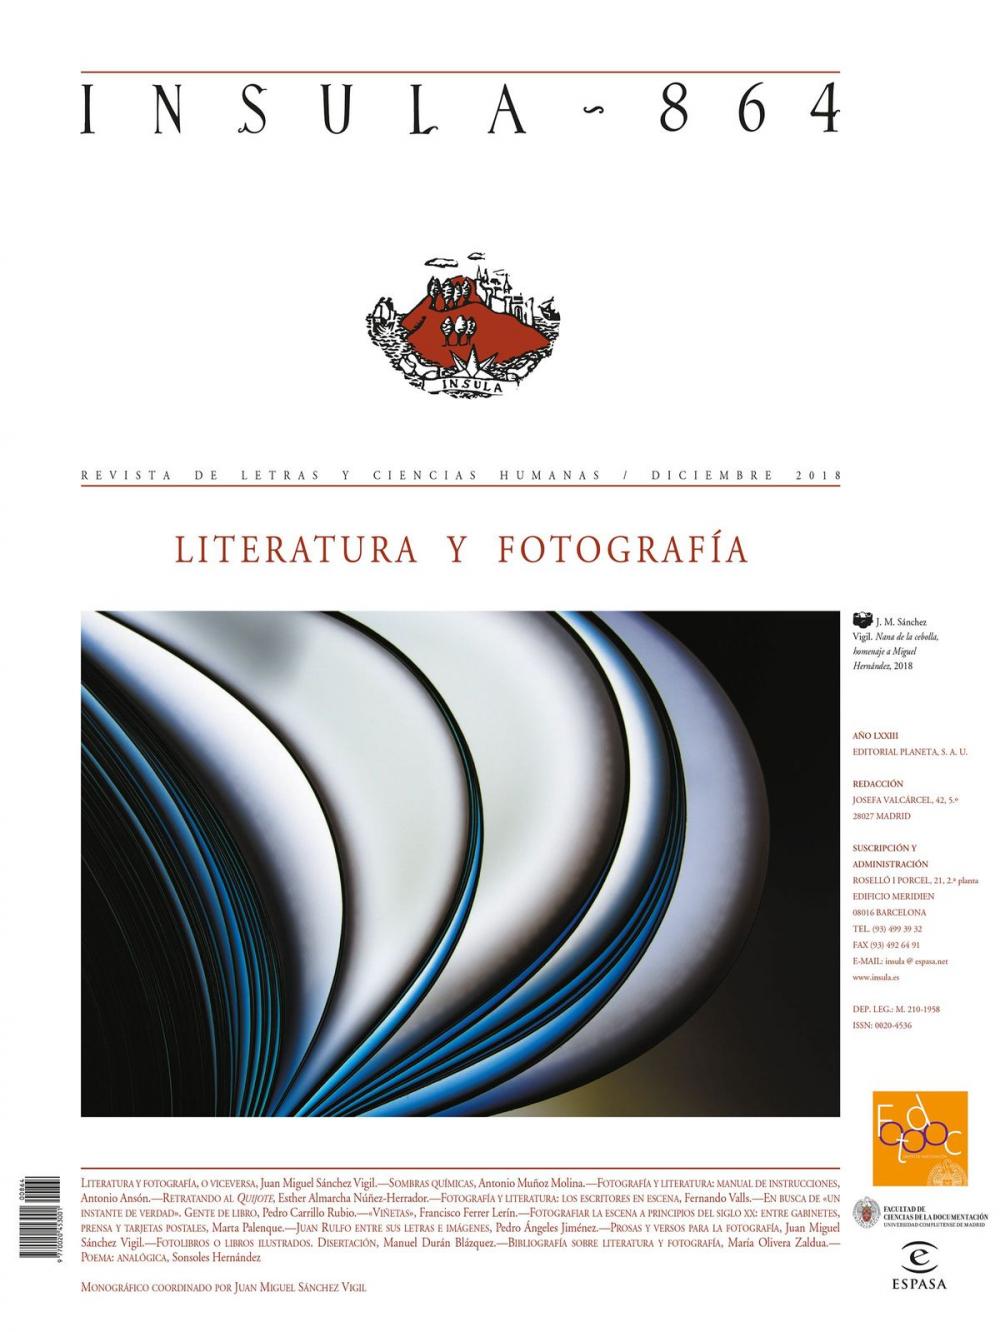 Big bigCover of Literatura y fotografía (Ínsula n° 864, diciembre de 2018)